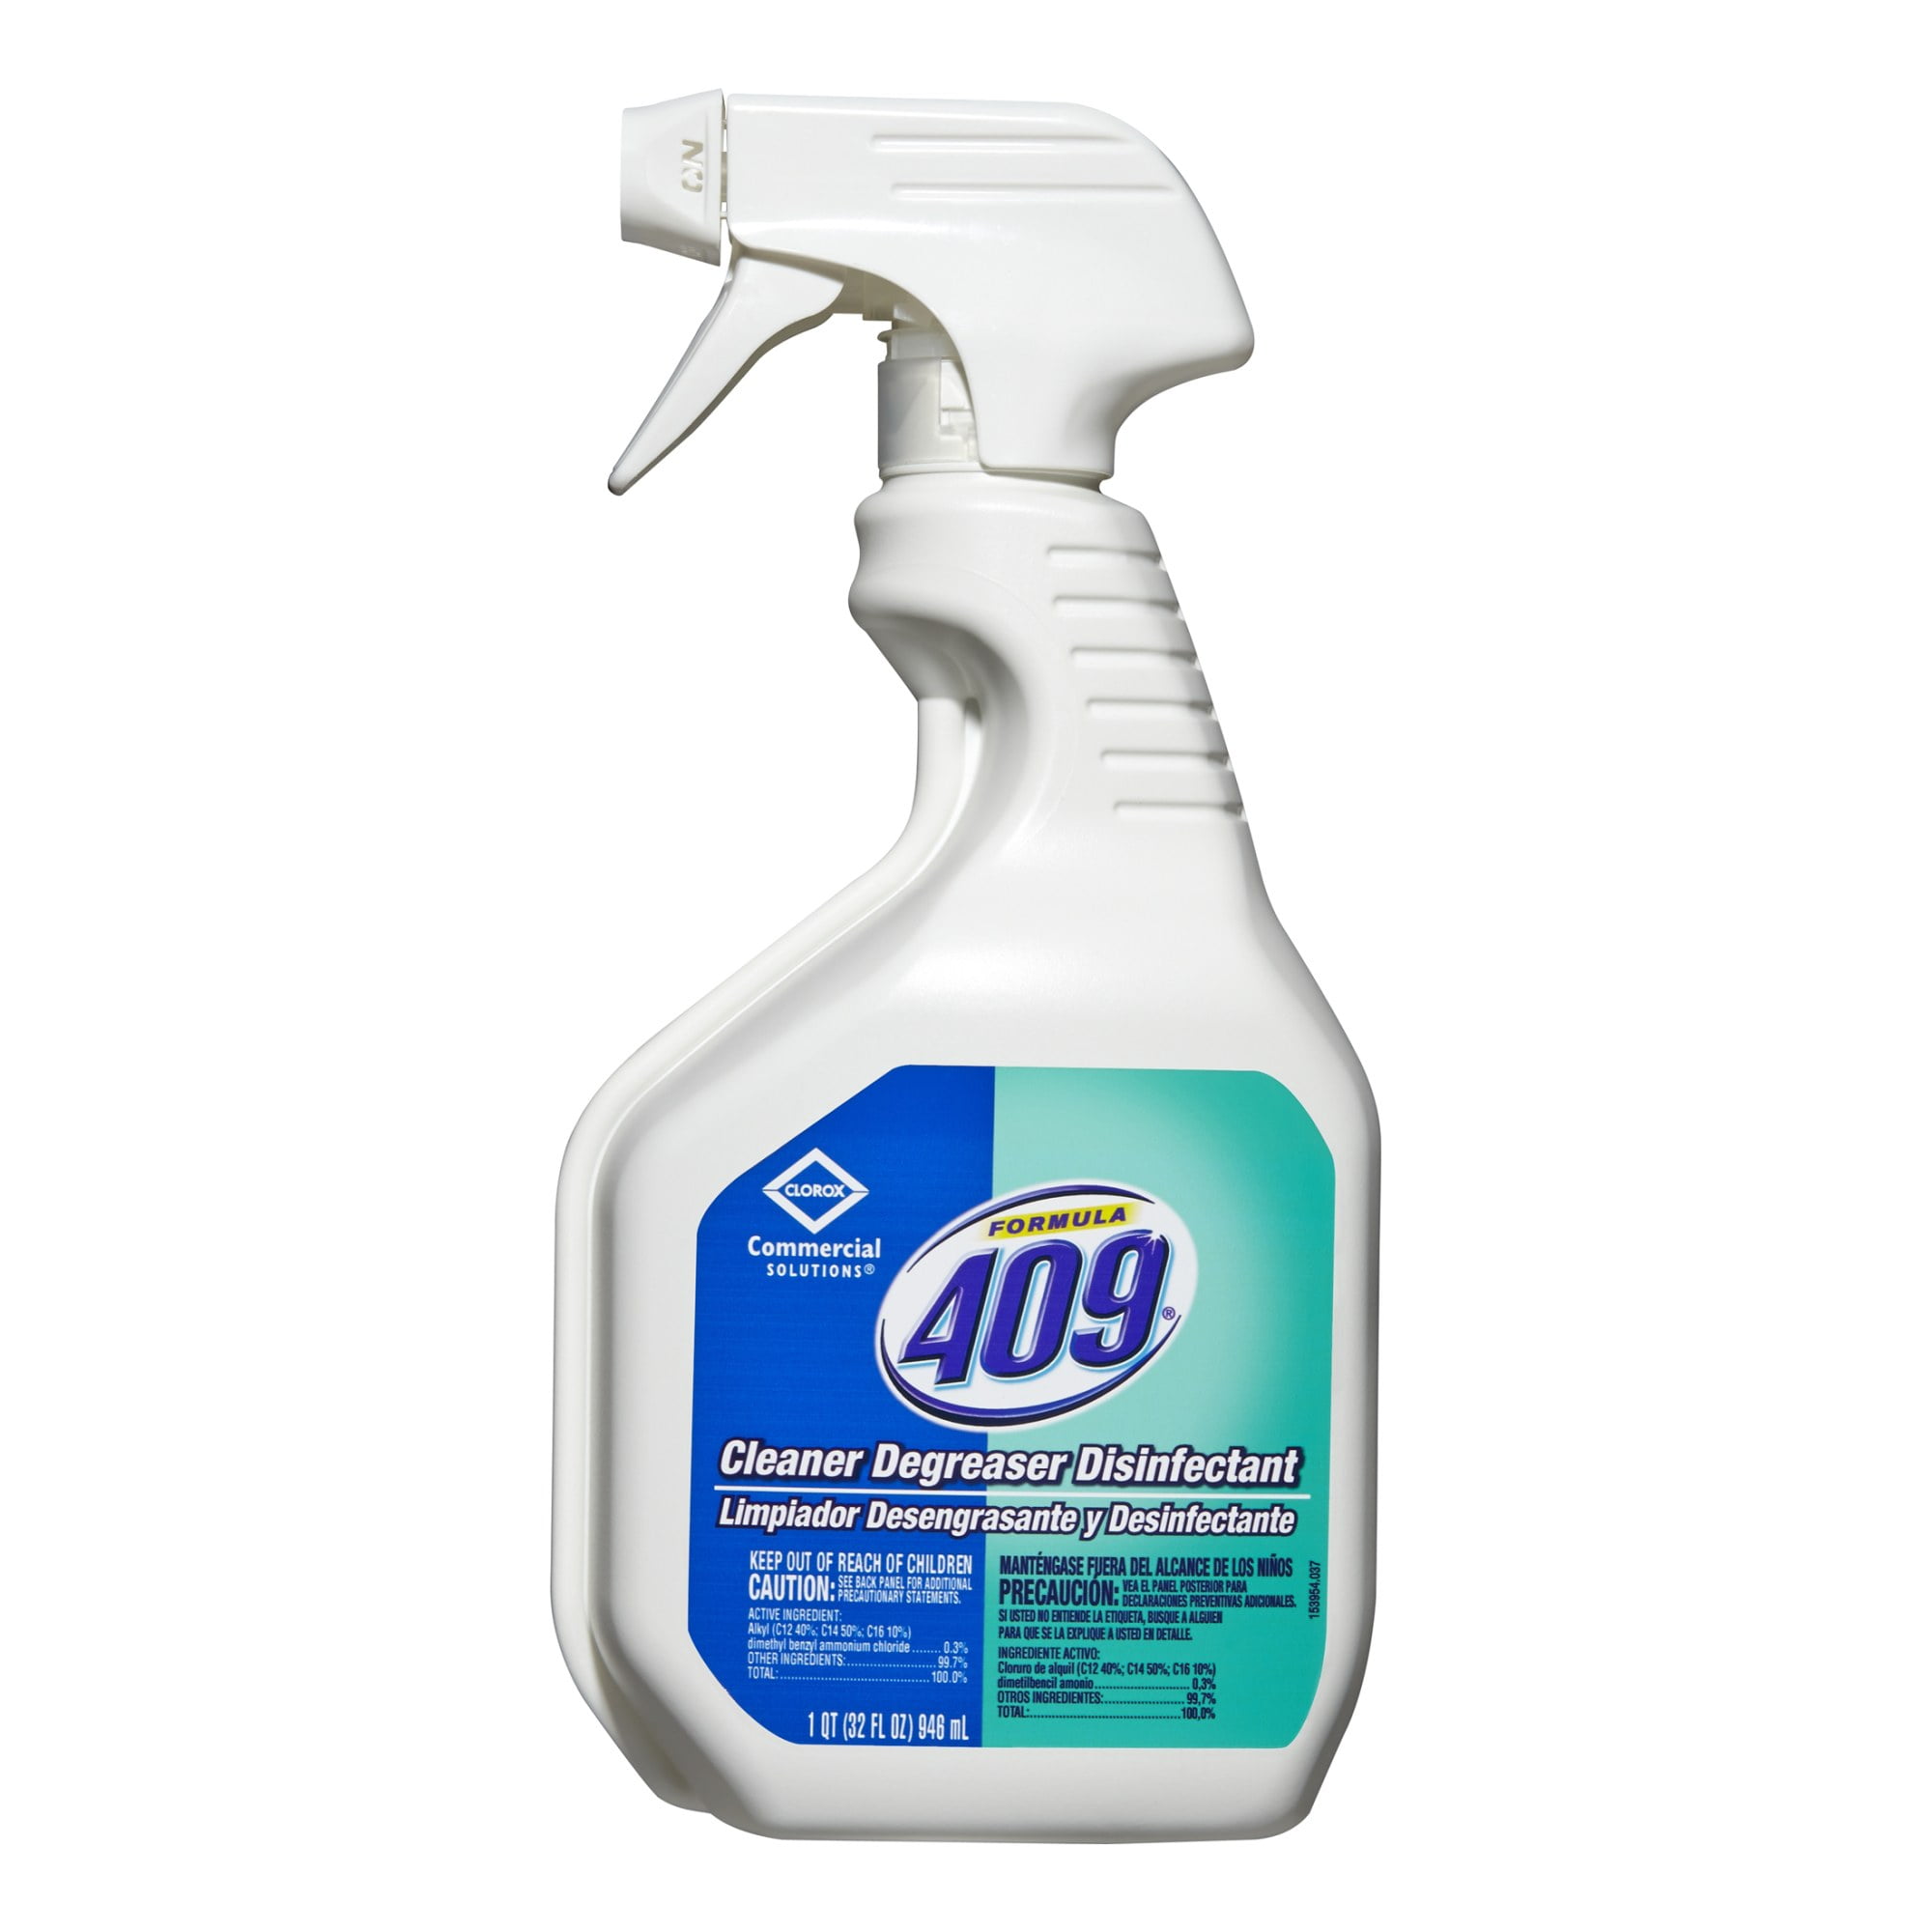 CSI Surface Disinfectant Cleaner Liquid 32oz (50140)